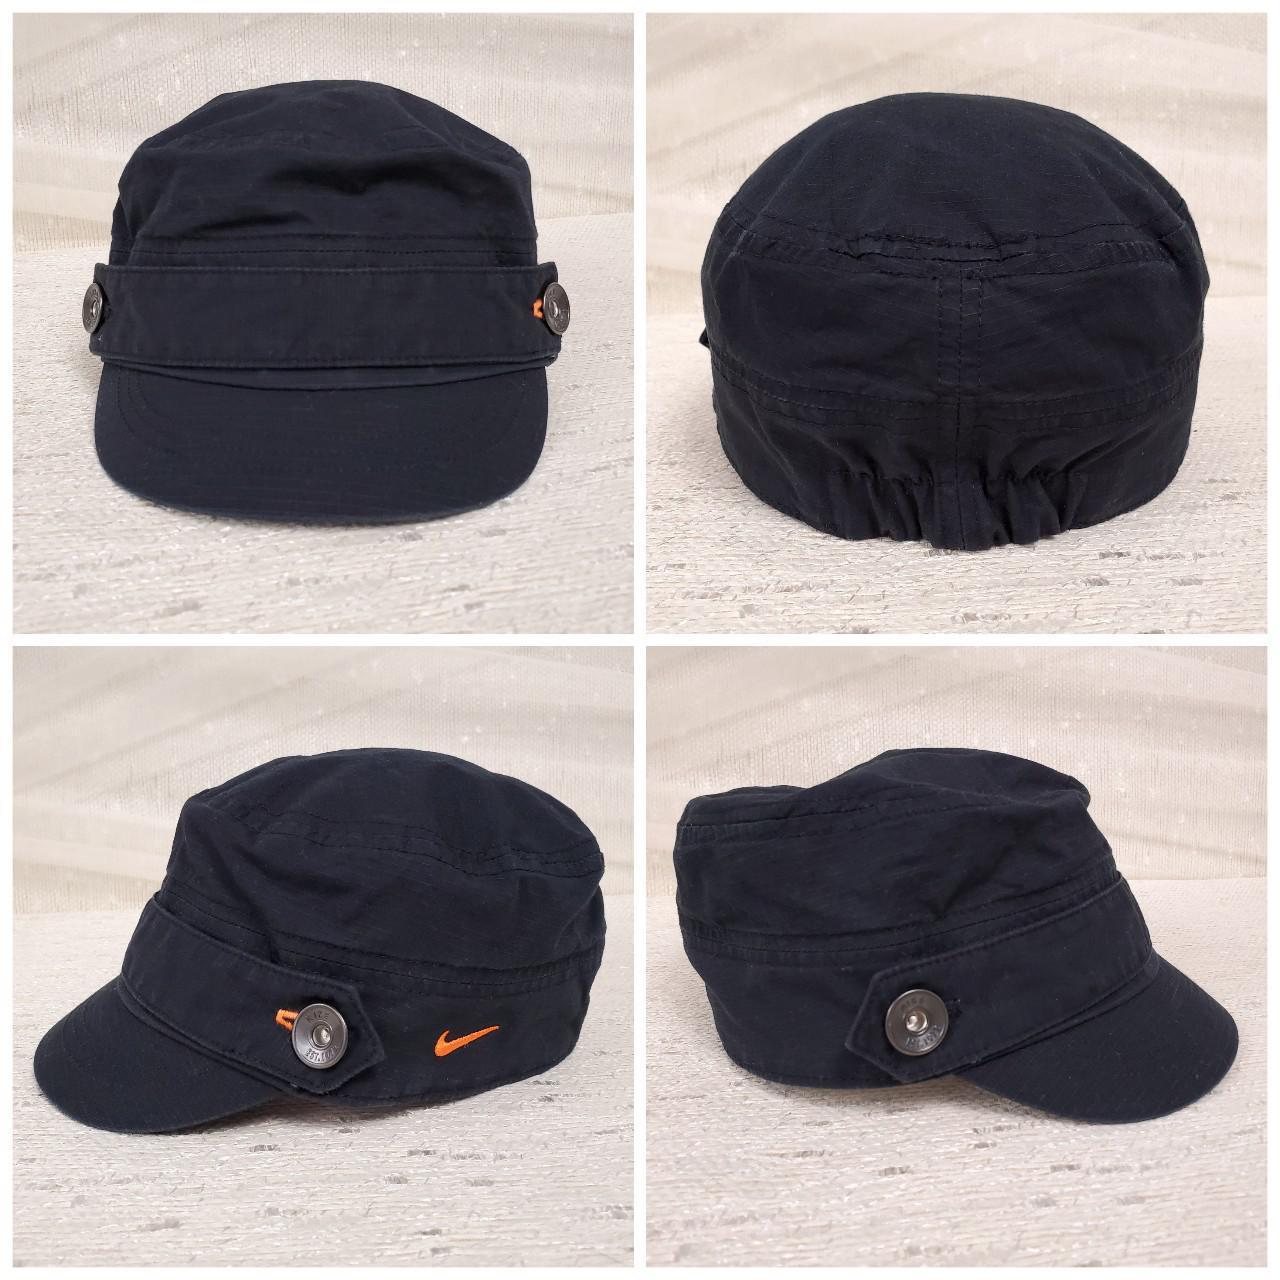 Product Image 3 - Nike black newsboy cap

Nike Golf